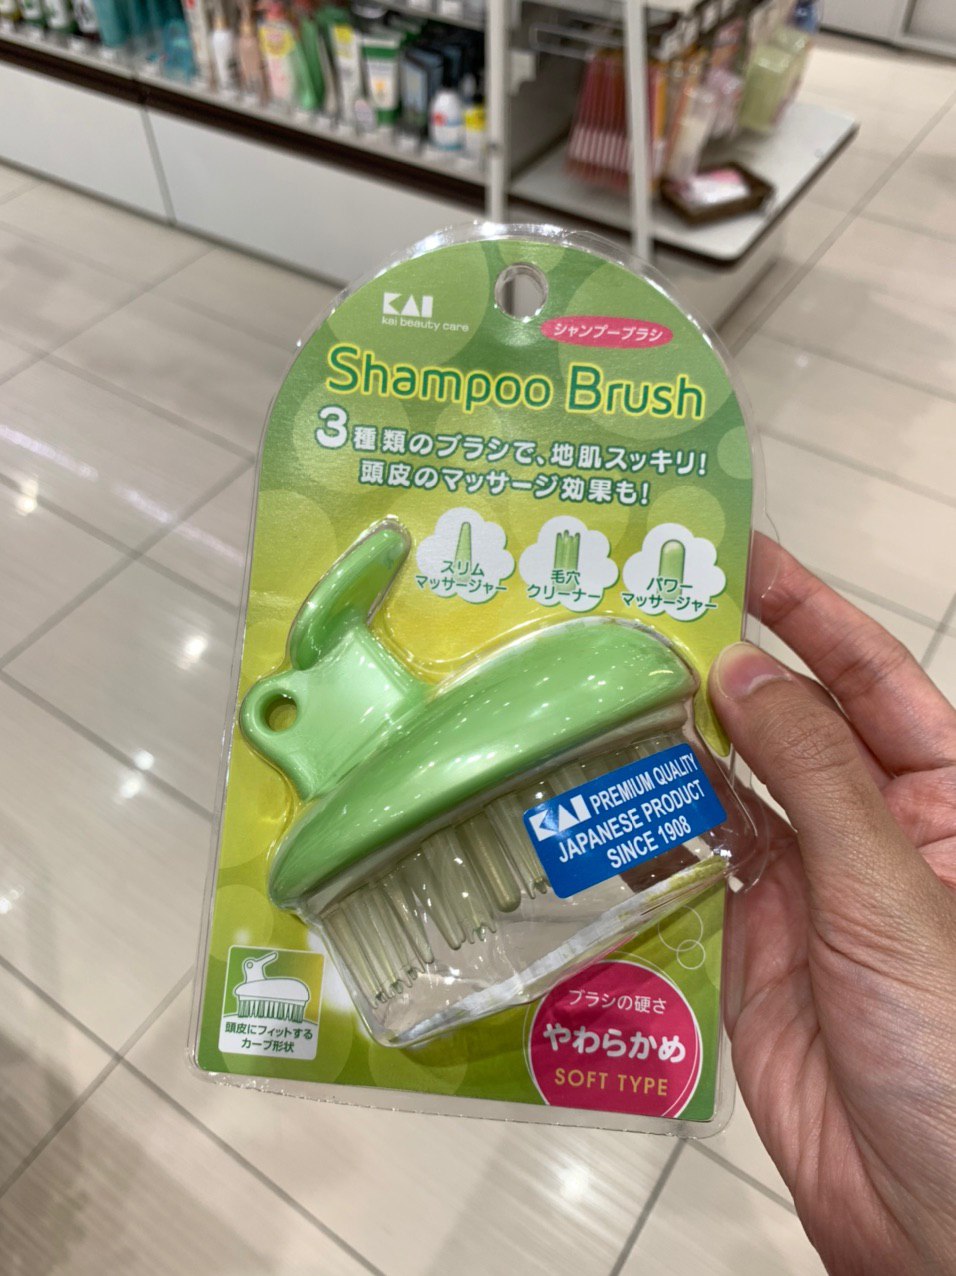 tokyu hands singapore - shampoo brush for showering